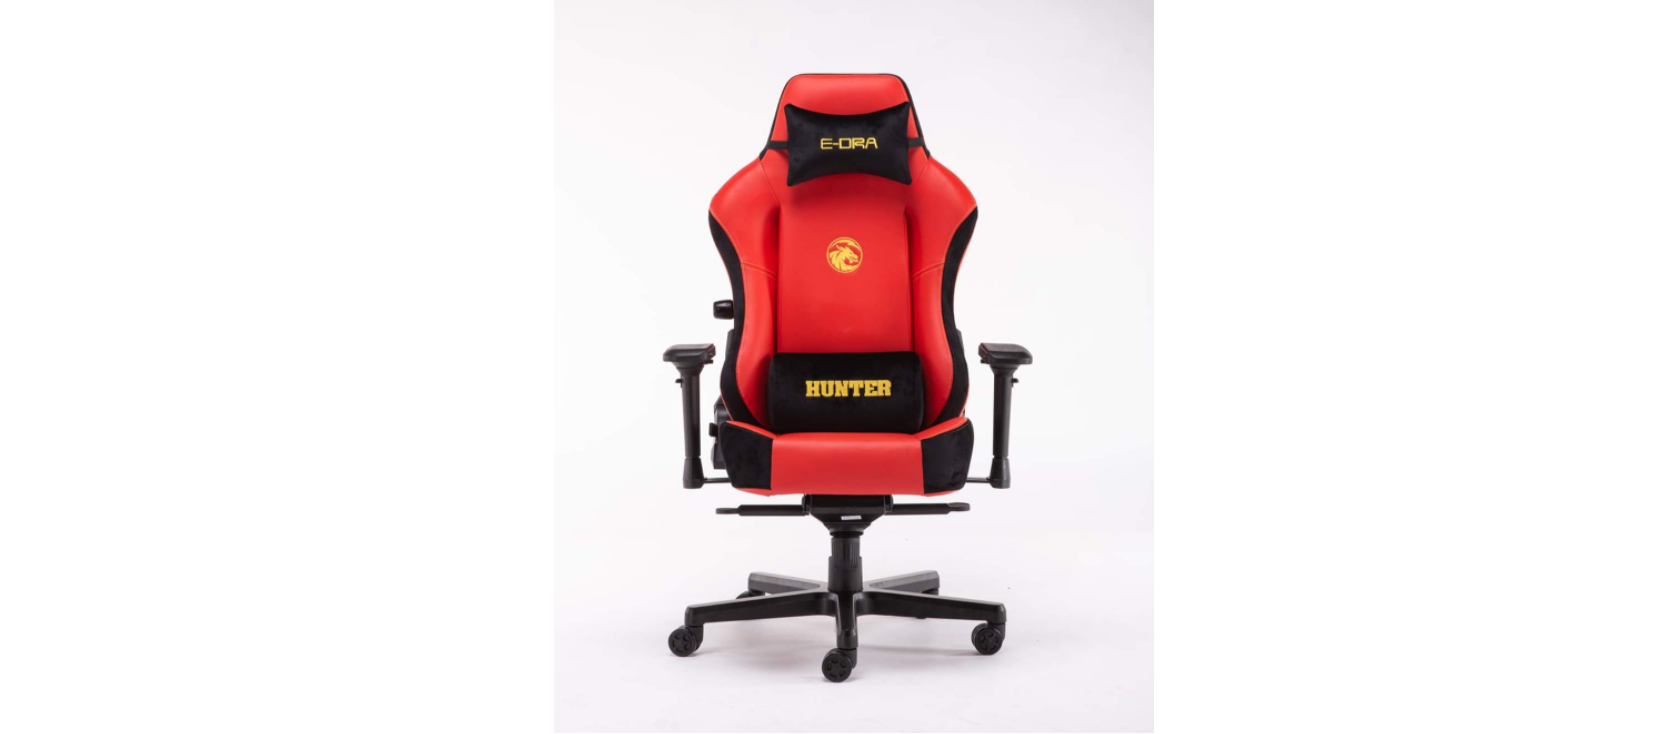 Ghế game E-Dra Hunter Gaming Chair - EGC 206 Red  có thiết kế hiện đại